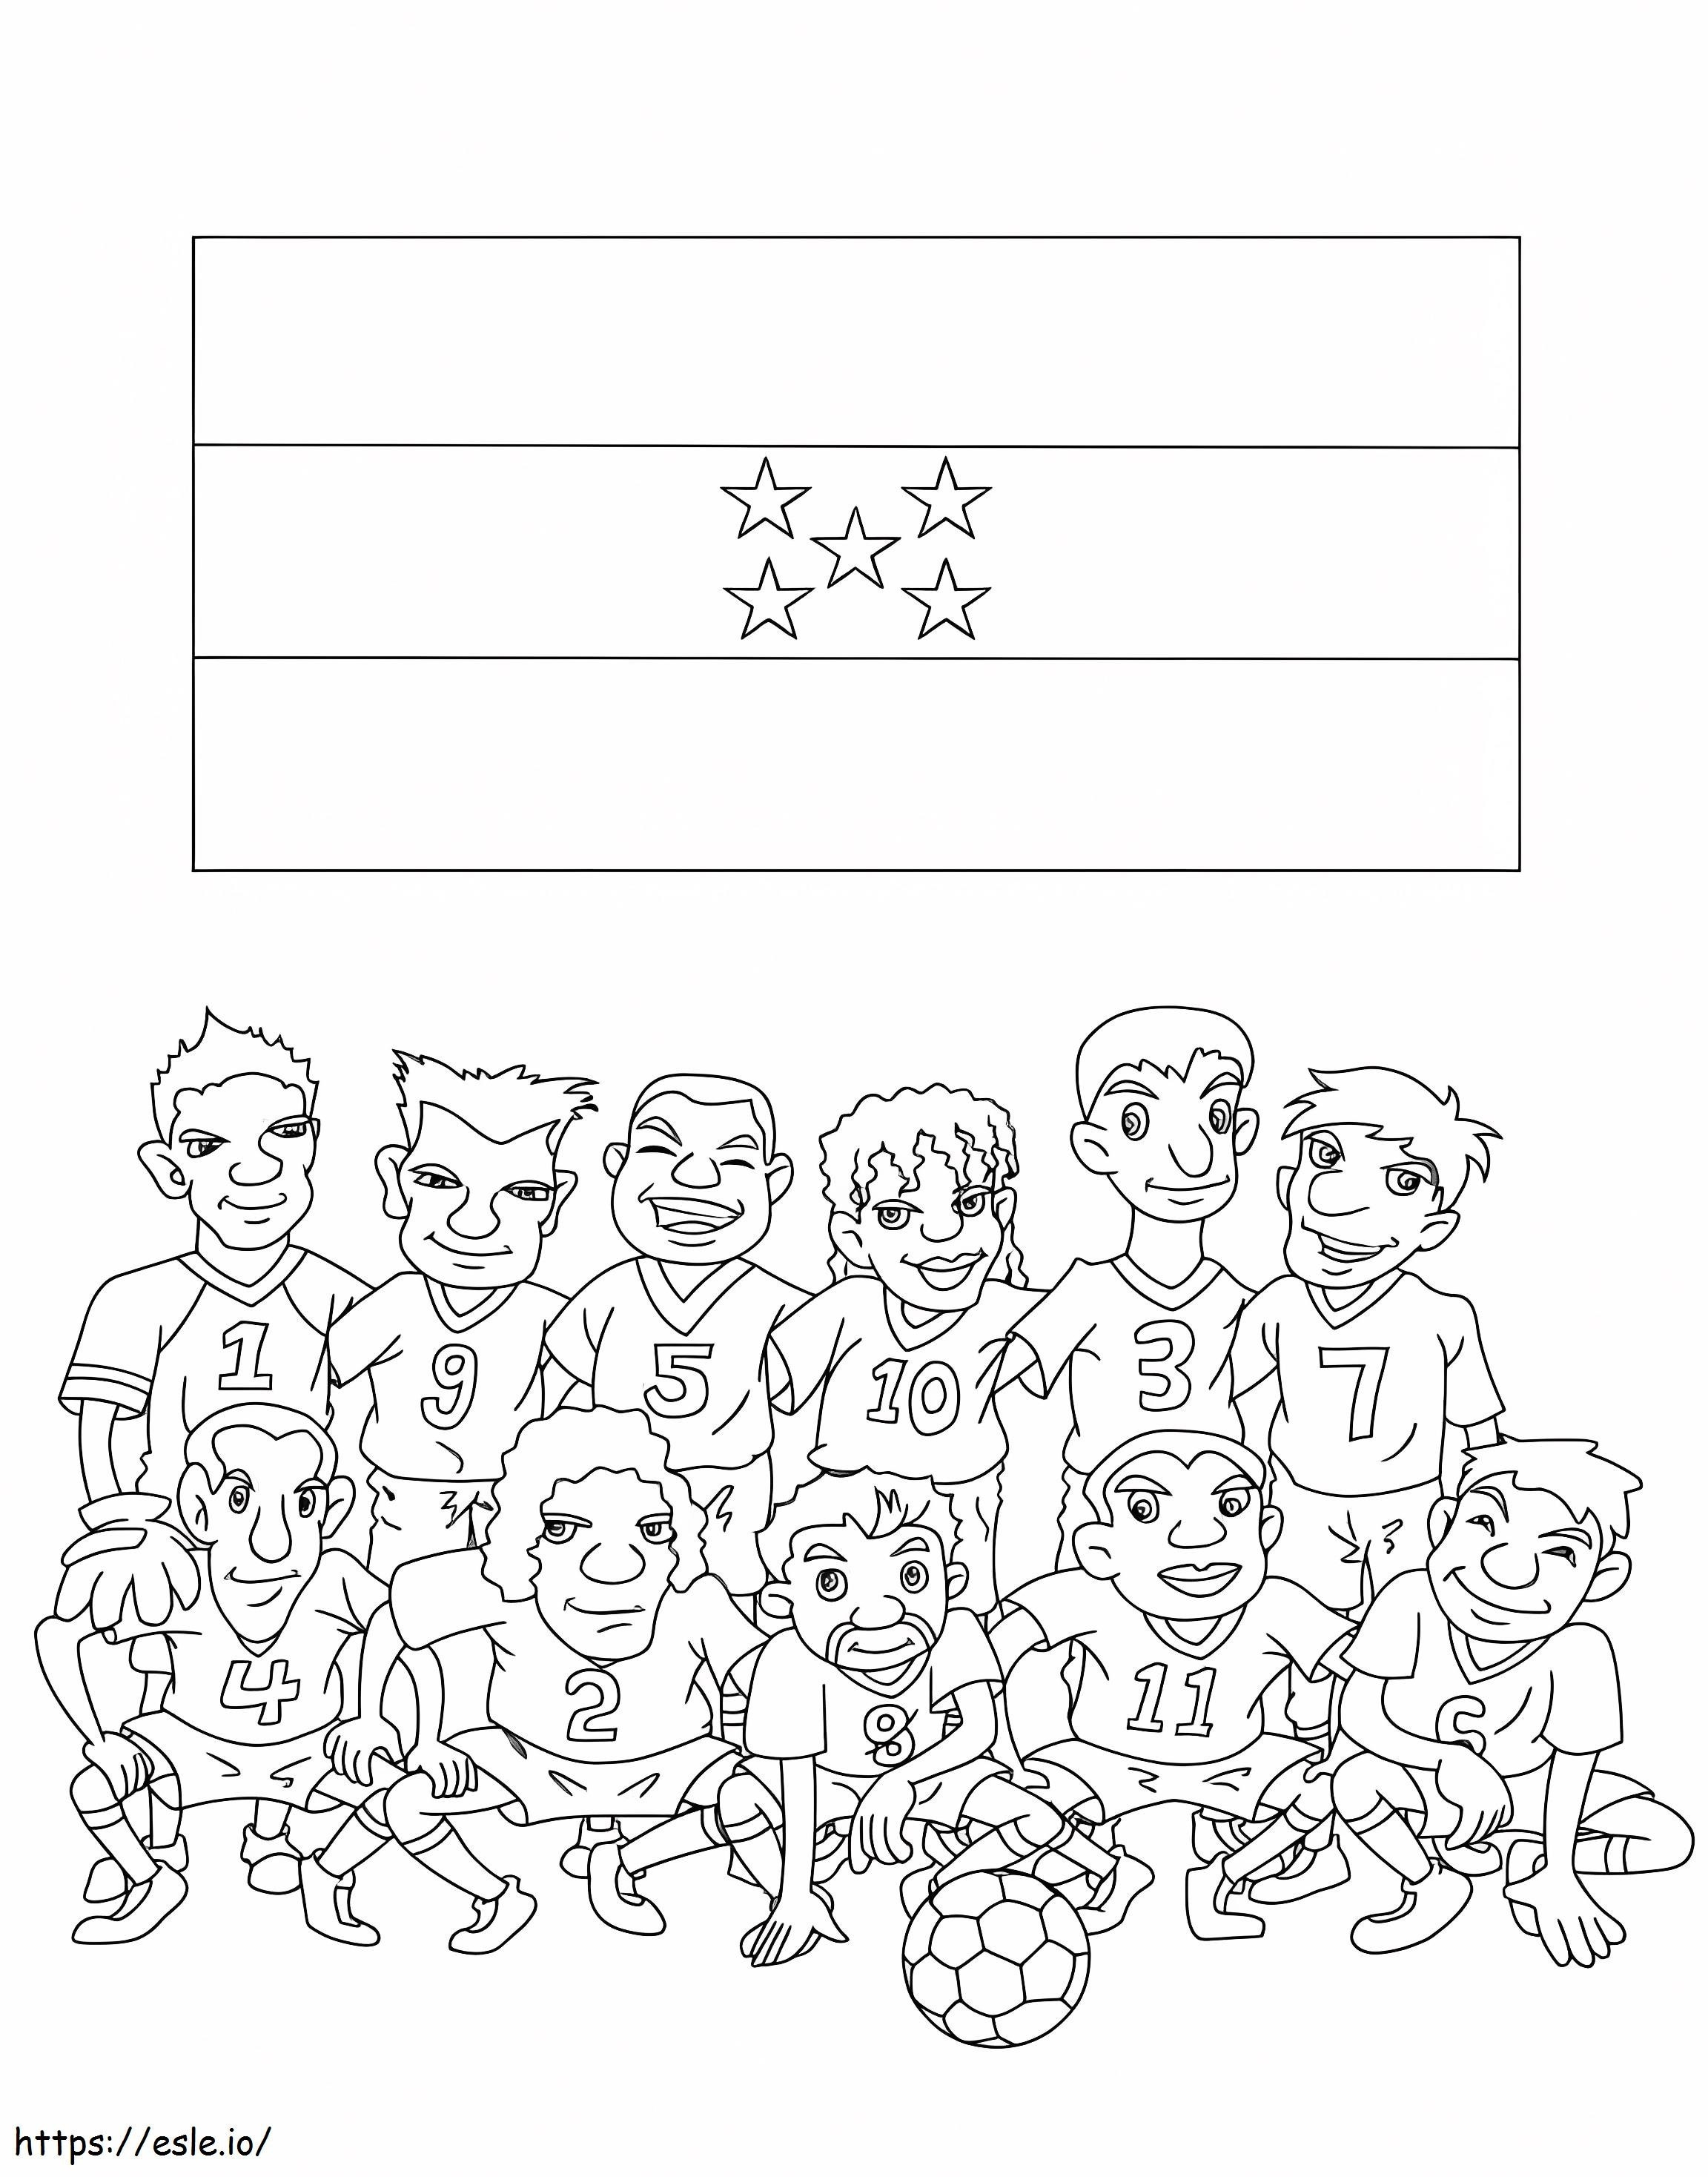 Coloriage Équipe nationale de football du Honduras à imprimer dessin